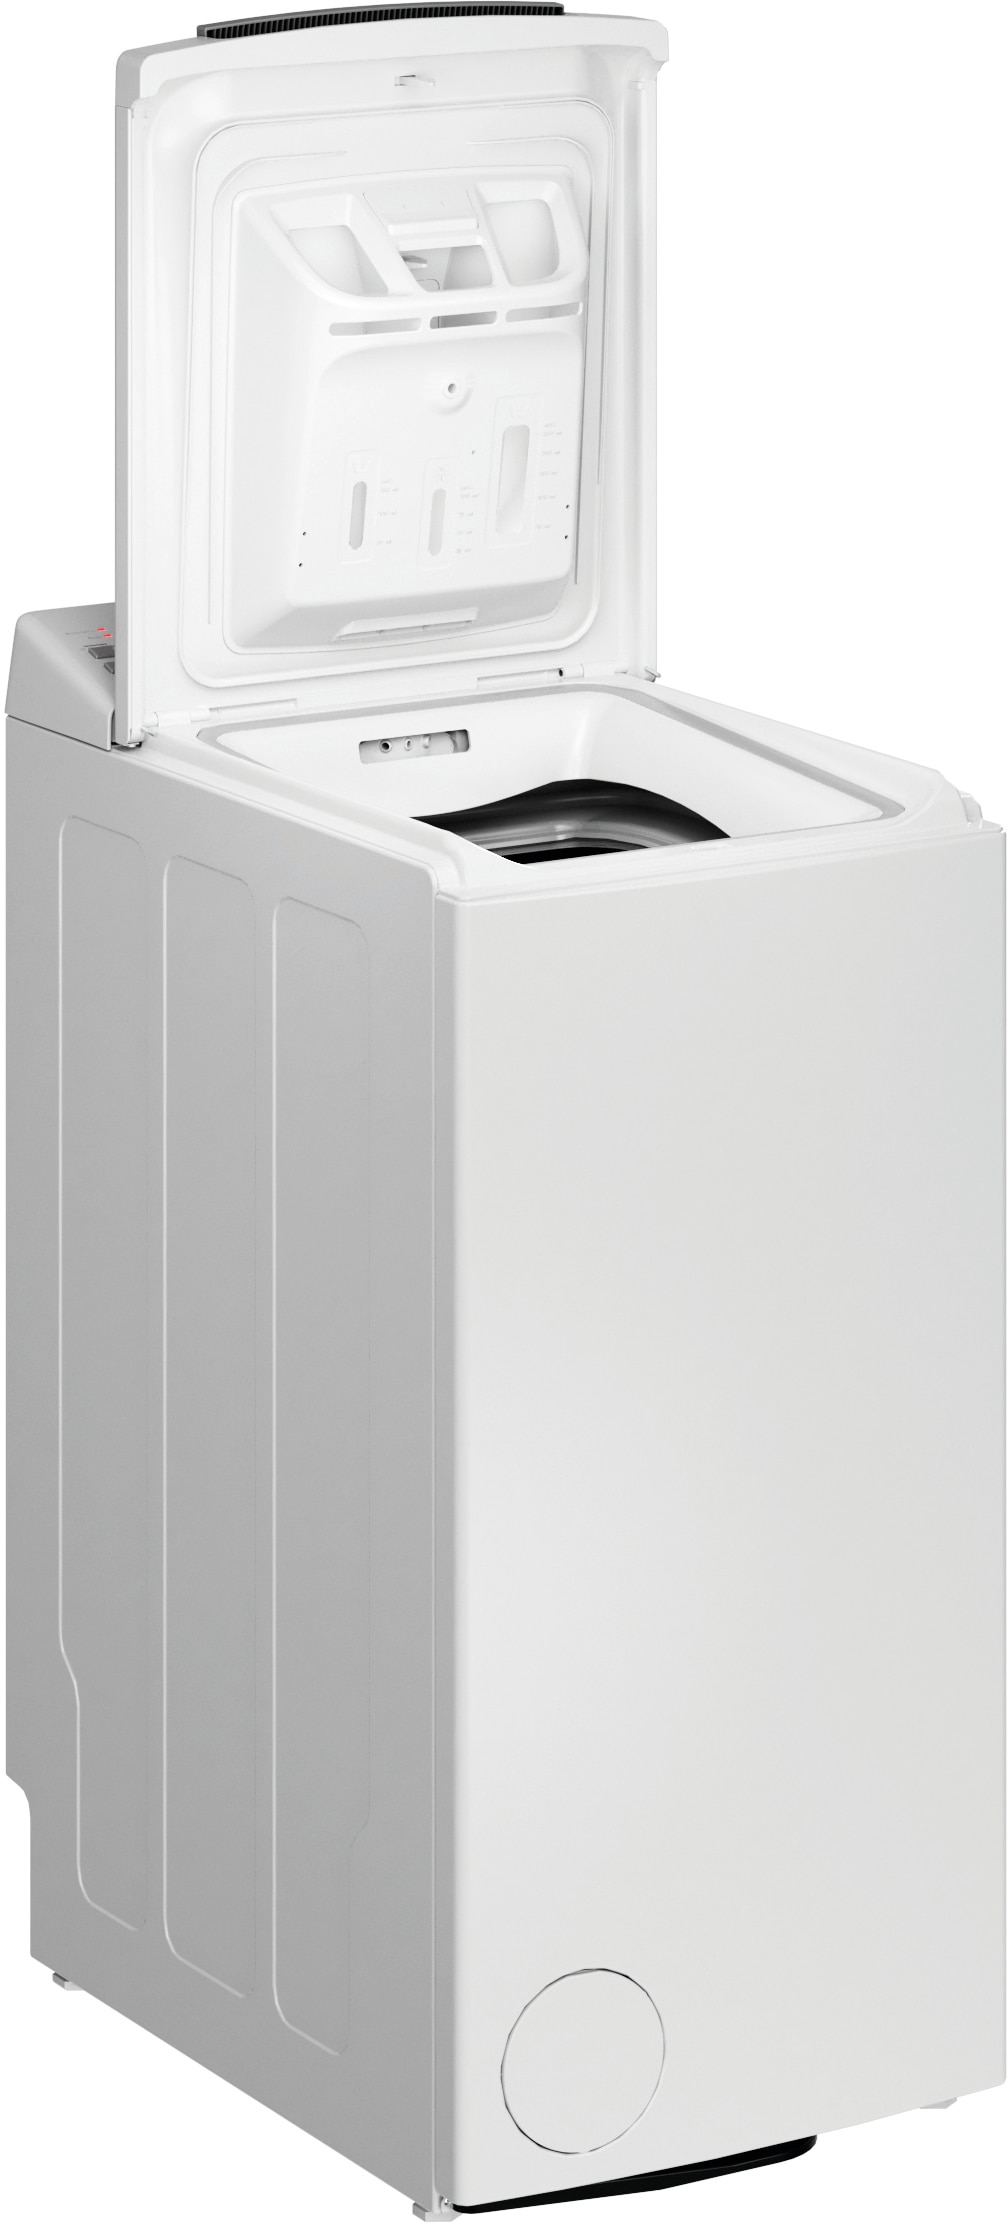 BAUKNECHT Waschmaschine Toplader »WMT Eco Shield 6523 C«, WMT Eco Shield  6523 C, 6,5 kg, 1200 U/min im Online-Shop bestellen